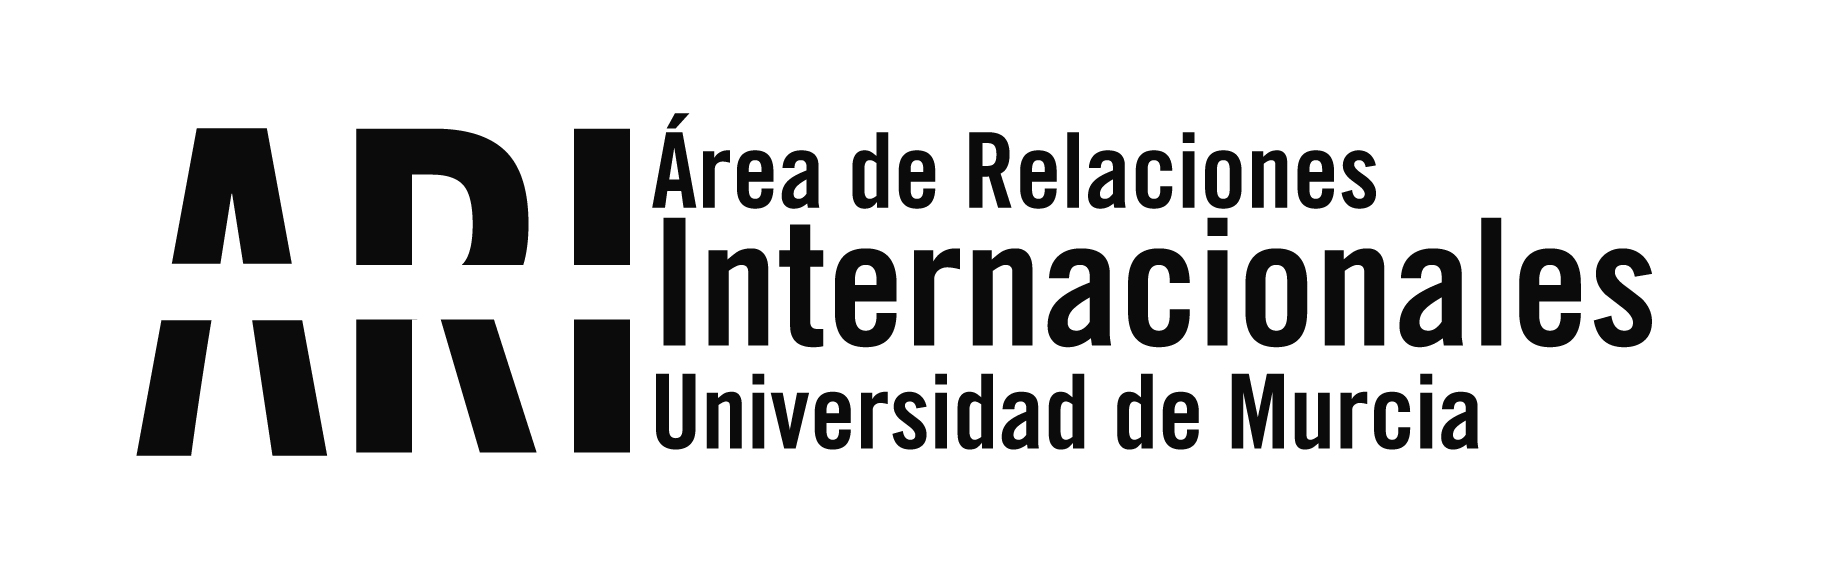 BUMI Bienvenida Universidad de Murcia Internacional 2019-20 - 2C - Área de Relaciones Internacionales